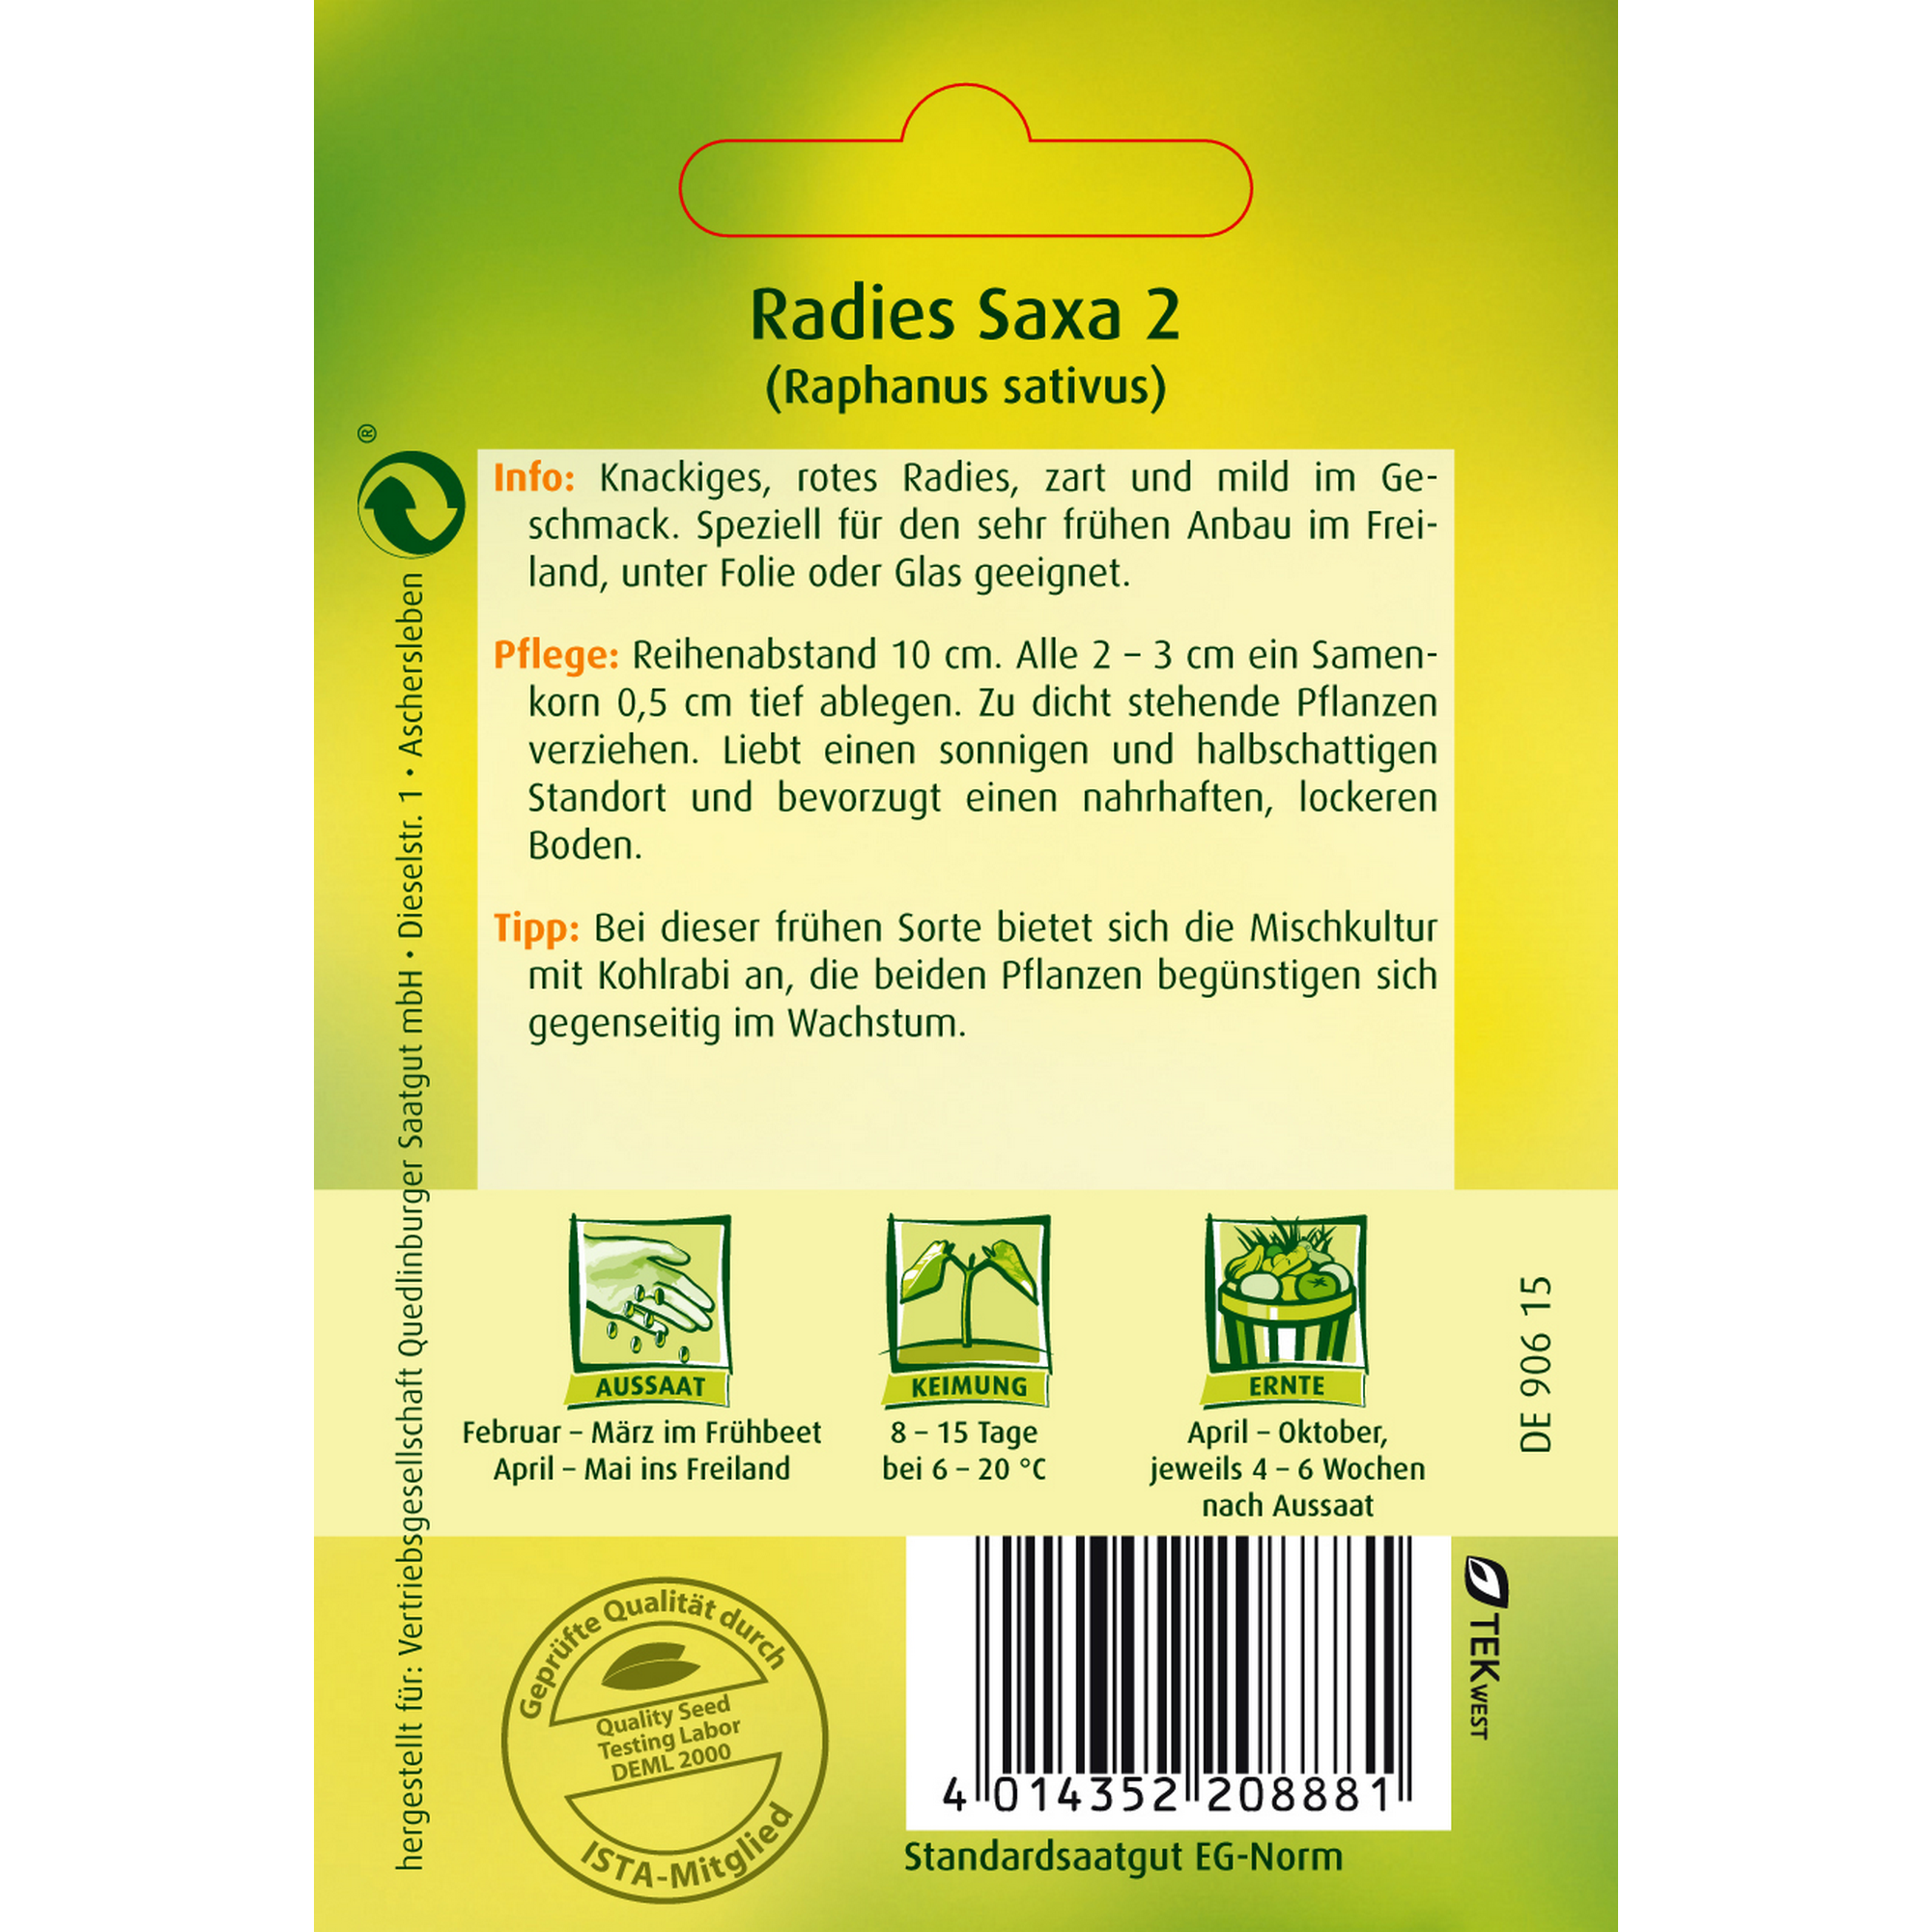 Radies 'Saxa 2' + product picture